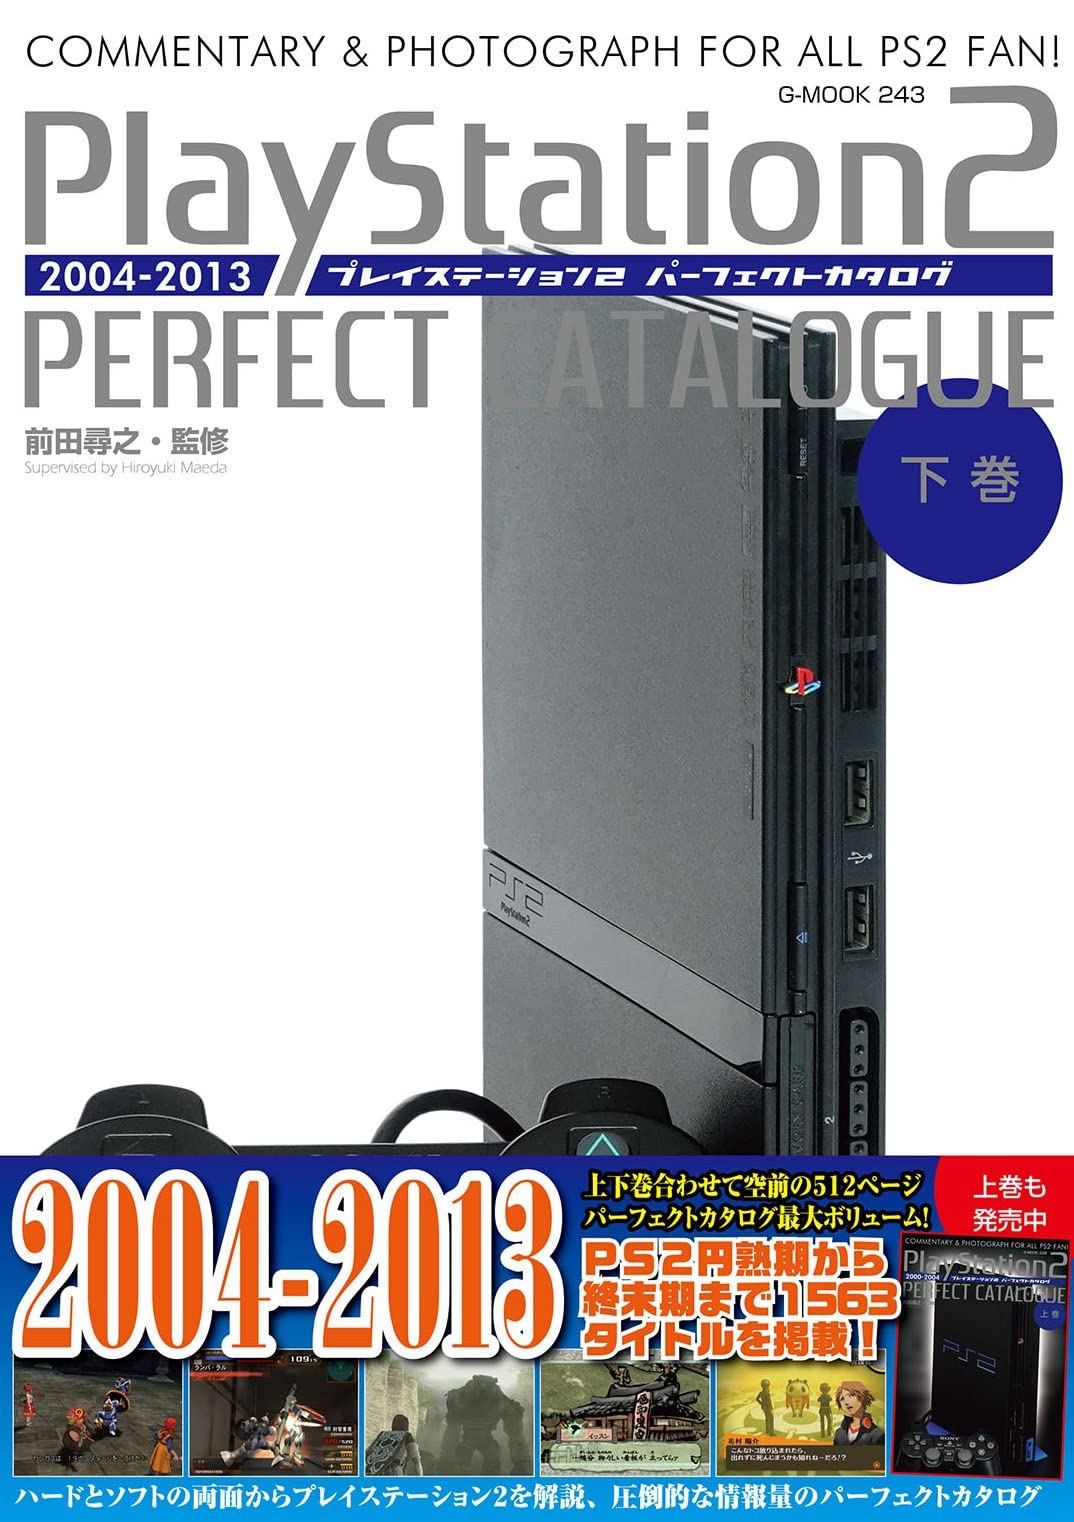 Playstation 2 Perfect Catalogue